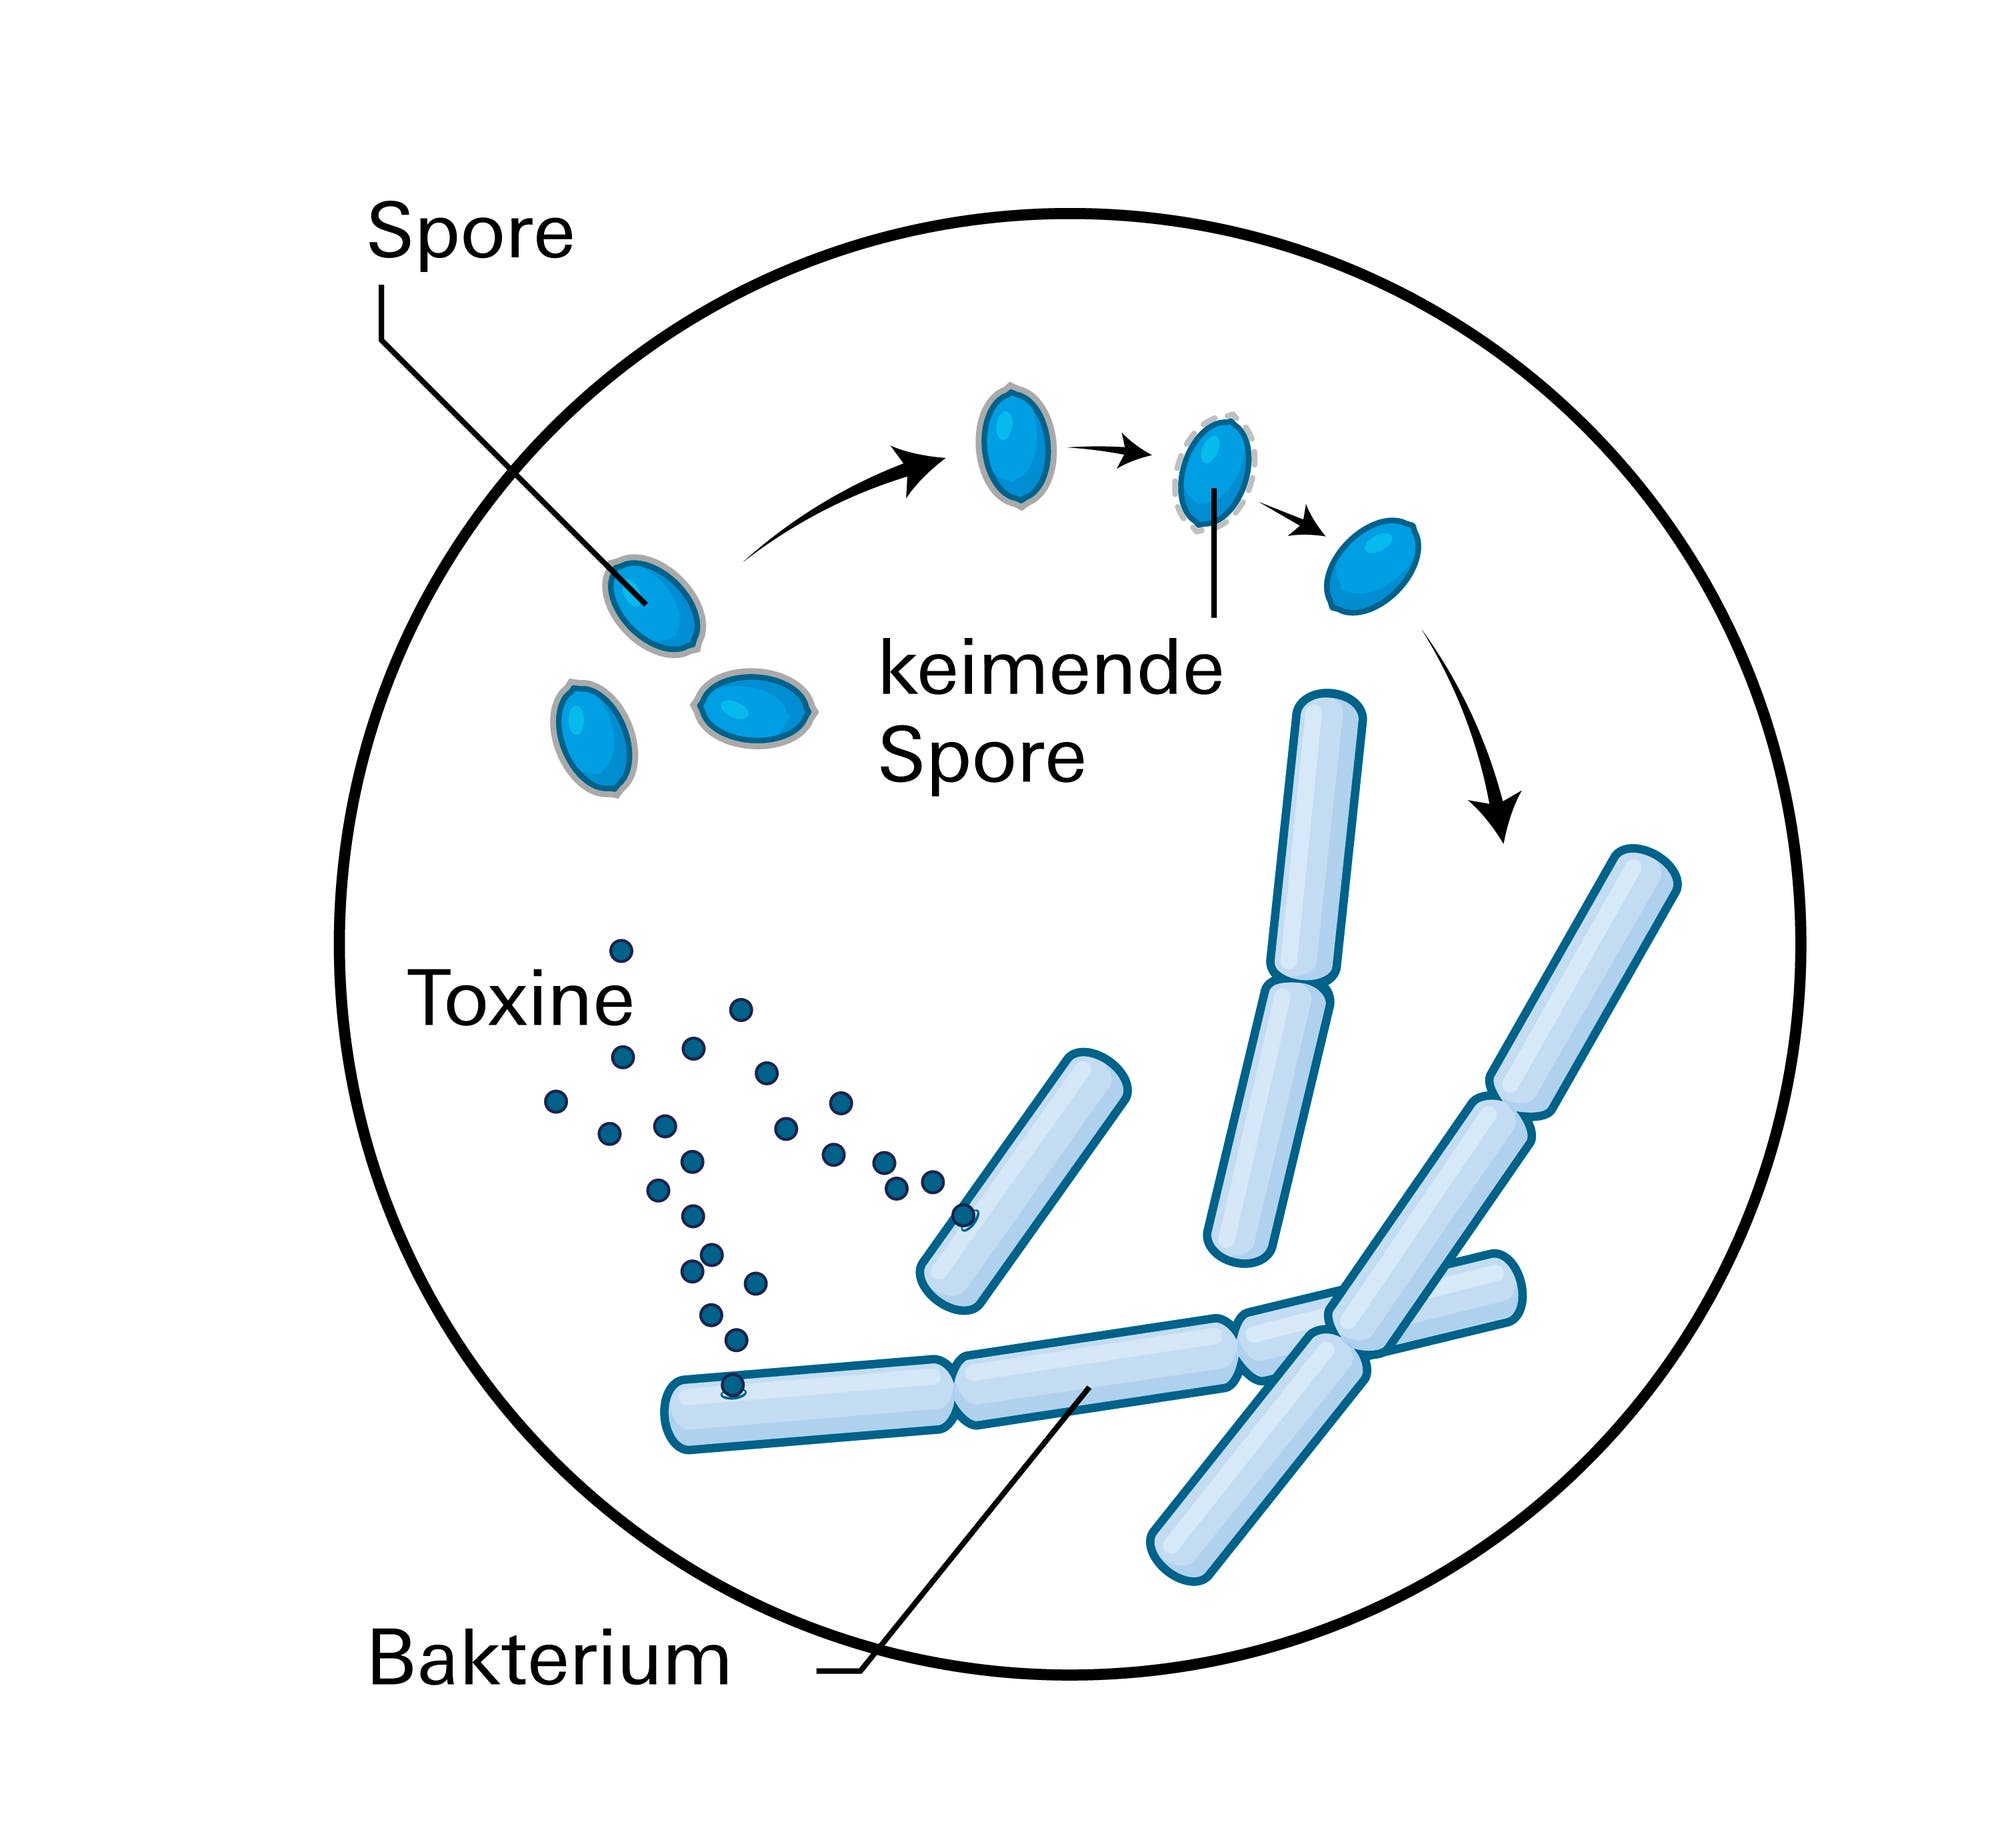 Das Milzbrandbakterium kommt in zwei verschiedenen Formen vor: entweder als stäbchenförmiges Bakterium oder als widerstandsfähige Spore